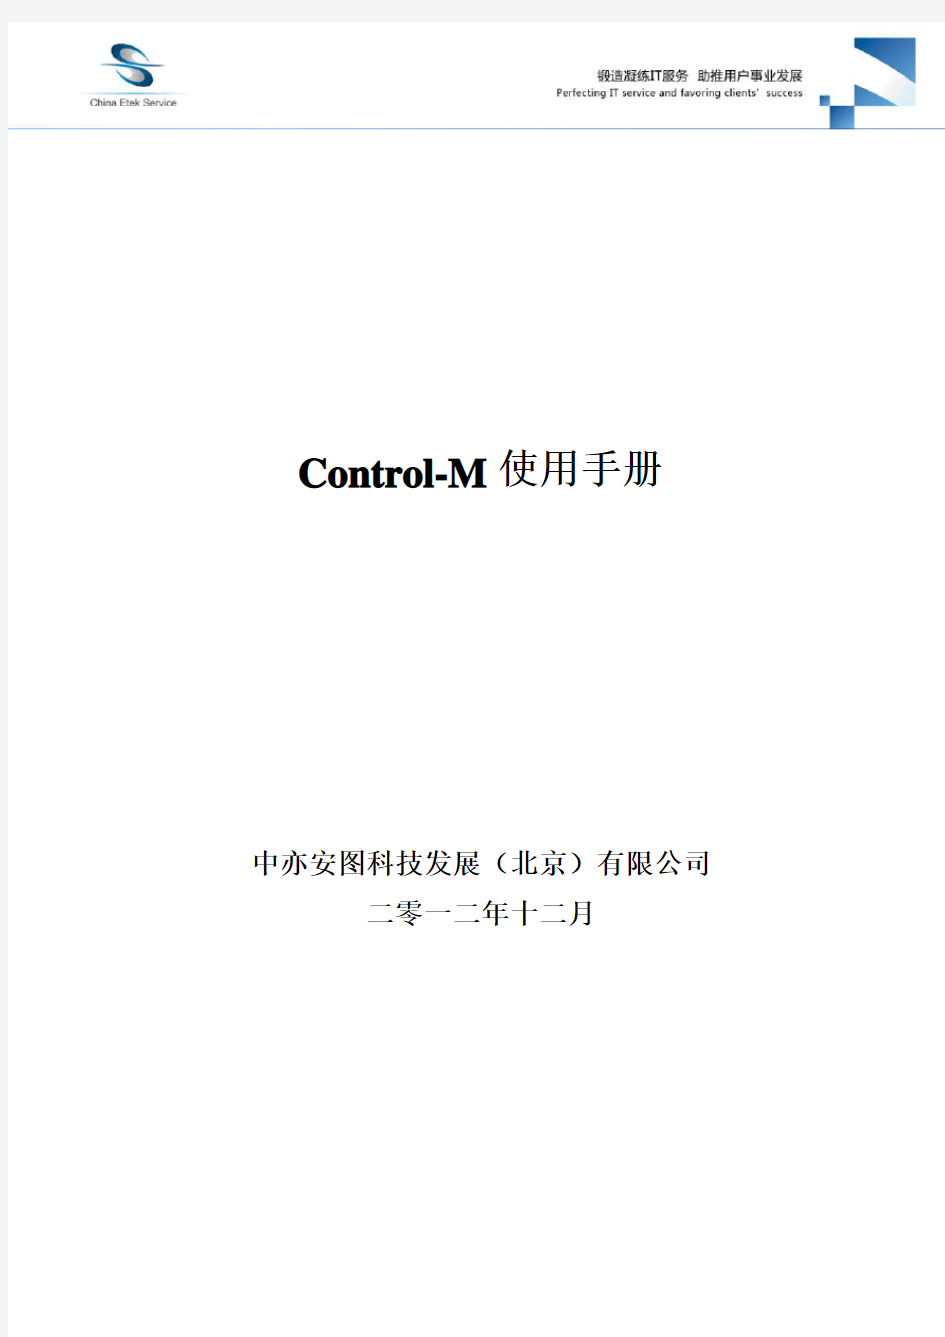 Control_M使用手册20130415